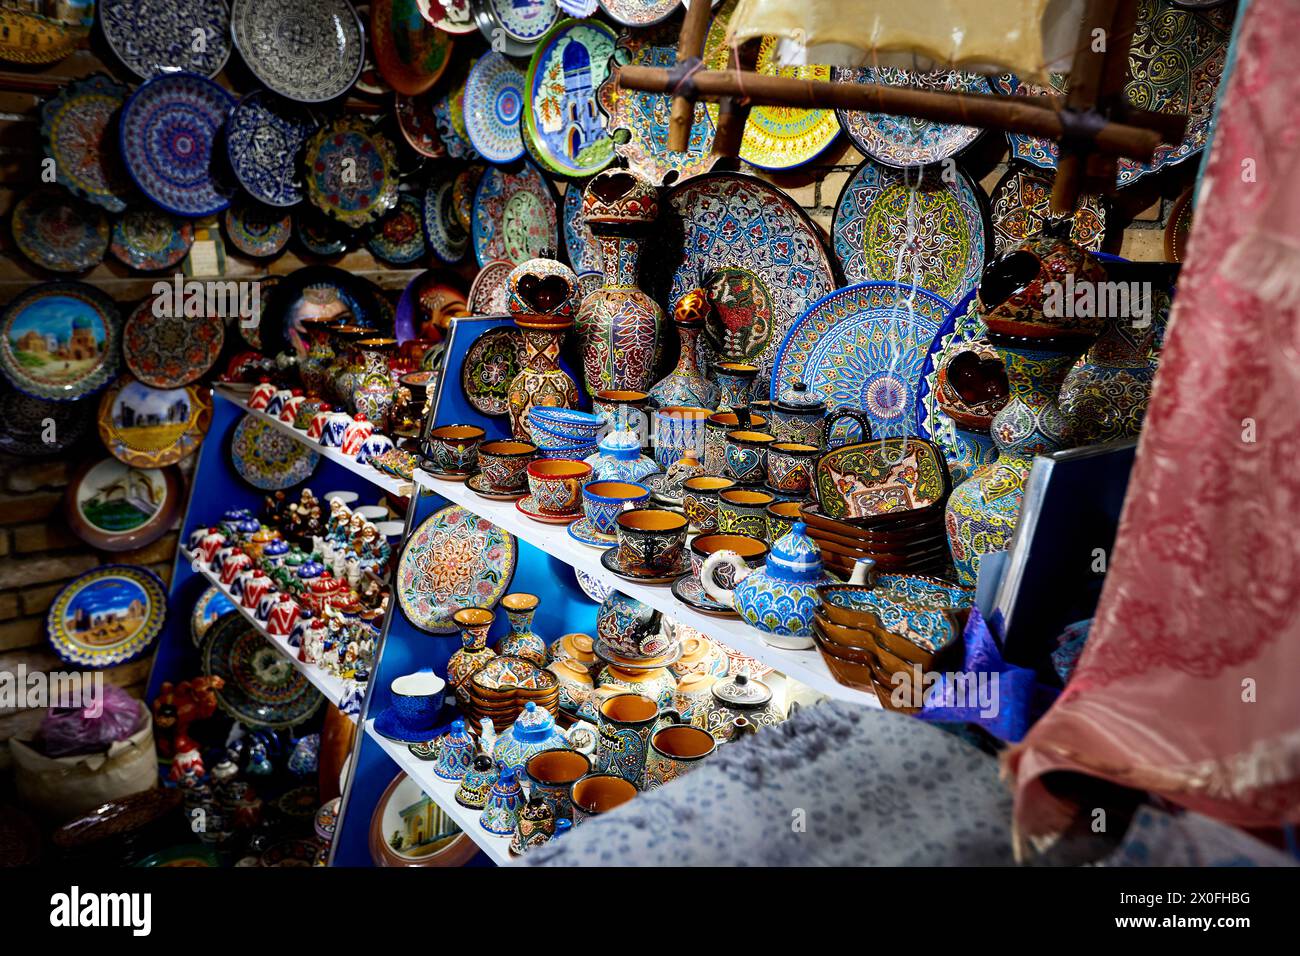 Piatti decorativi in ceramica colorata, tazze e souvenir con ornamenti tradizionali dell'uzbekistan in negozio a Samarcanda in Uzbekistan, Asia centrale, Silk Roa Foto Stock